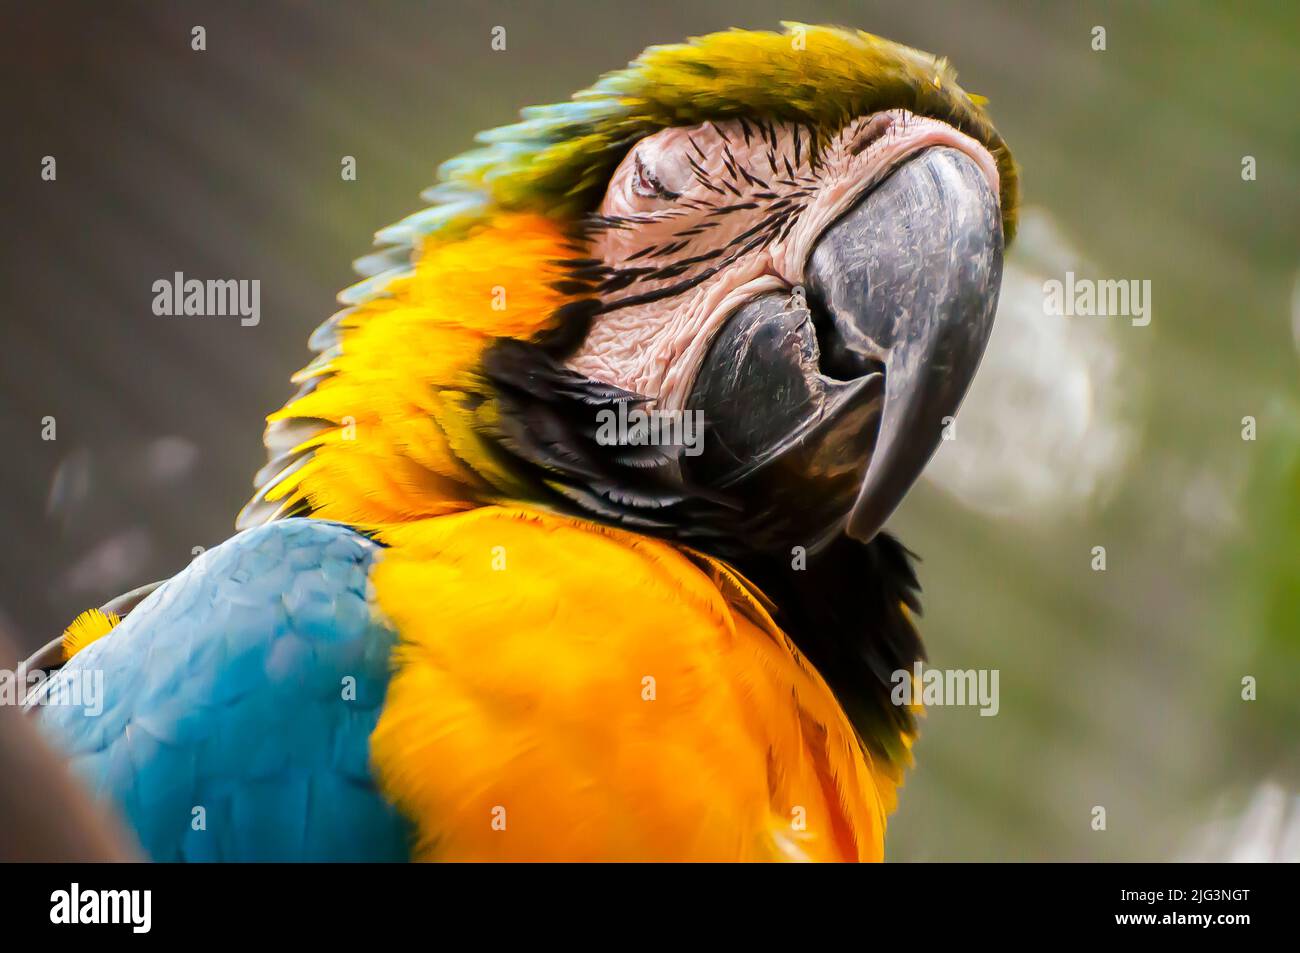 Macaw jaune et bleu, un oiseau brésilien Banque D'Images